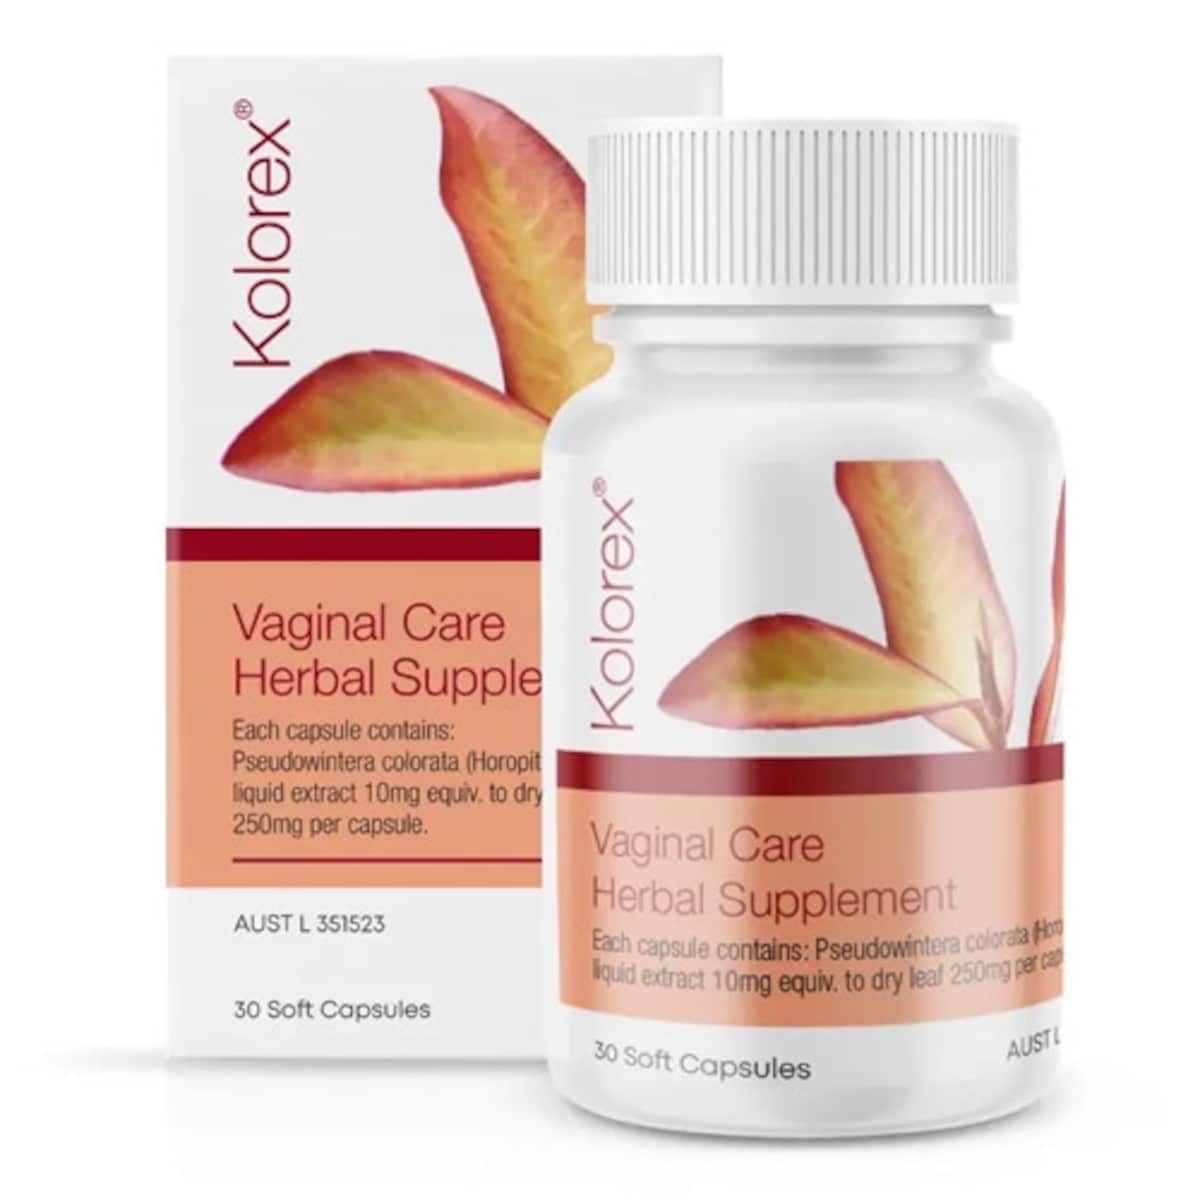 Kolorex Vaginal Care Herbal Supplement 30 Capsules